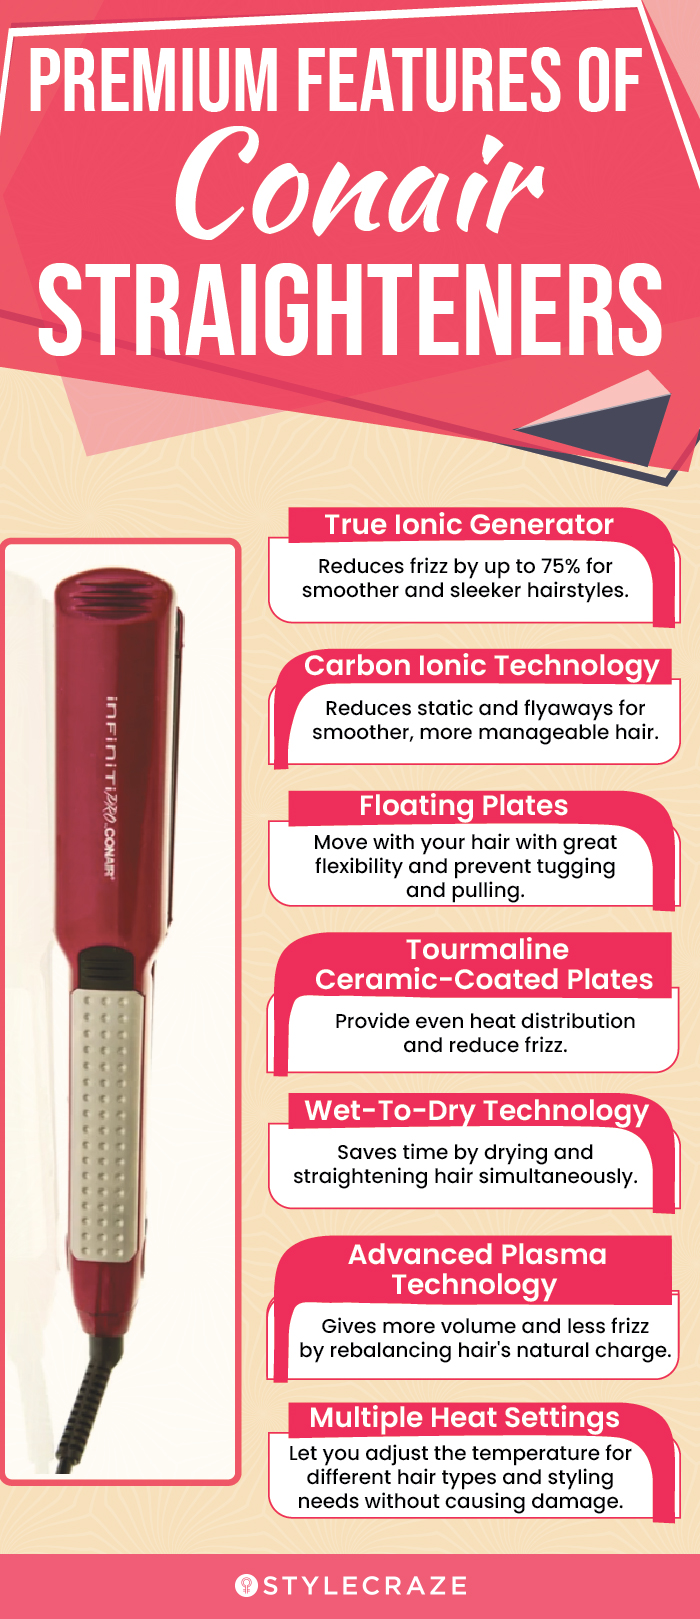 Premium Features Of Conair Straighteners (infographic)